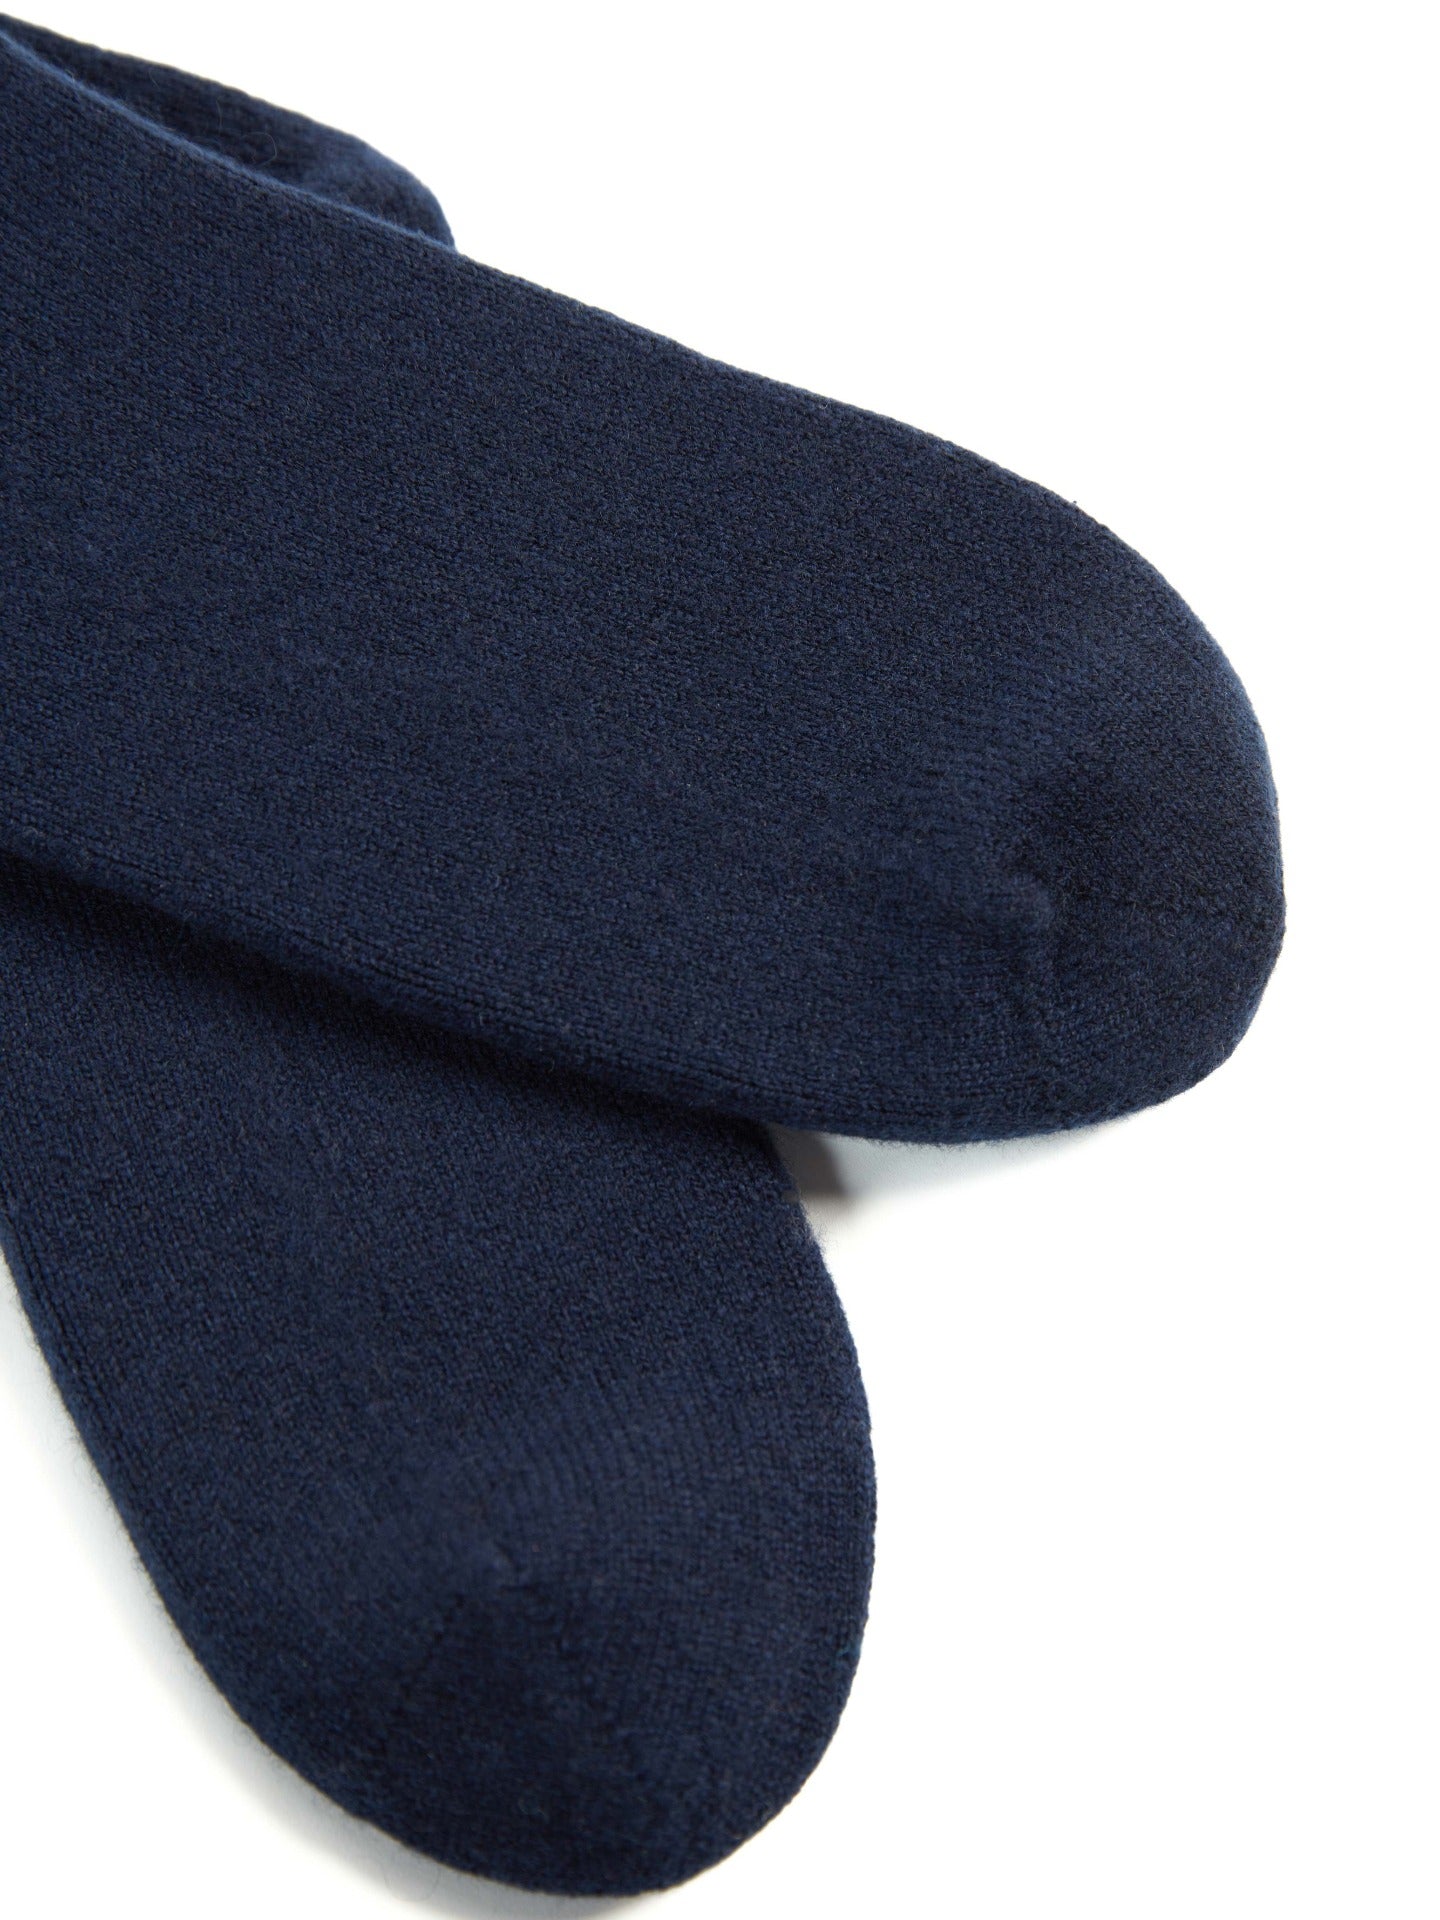 Unisex Cashmere Rib Knit Bed Socks Navy - Gobi Cashmere